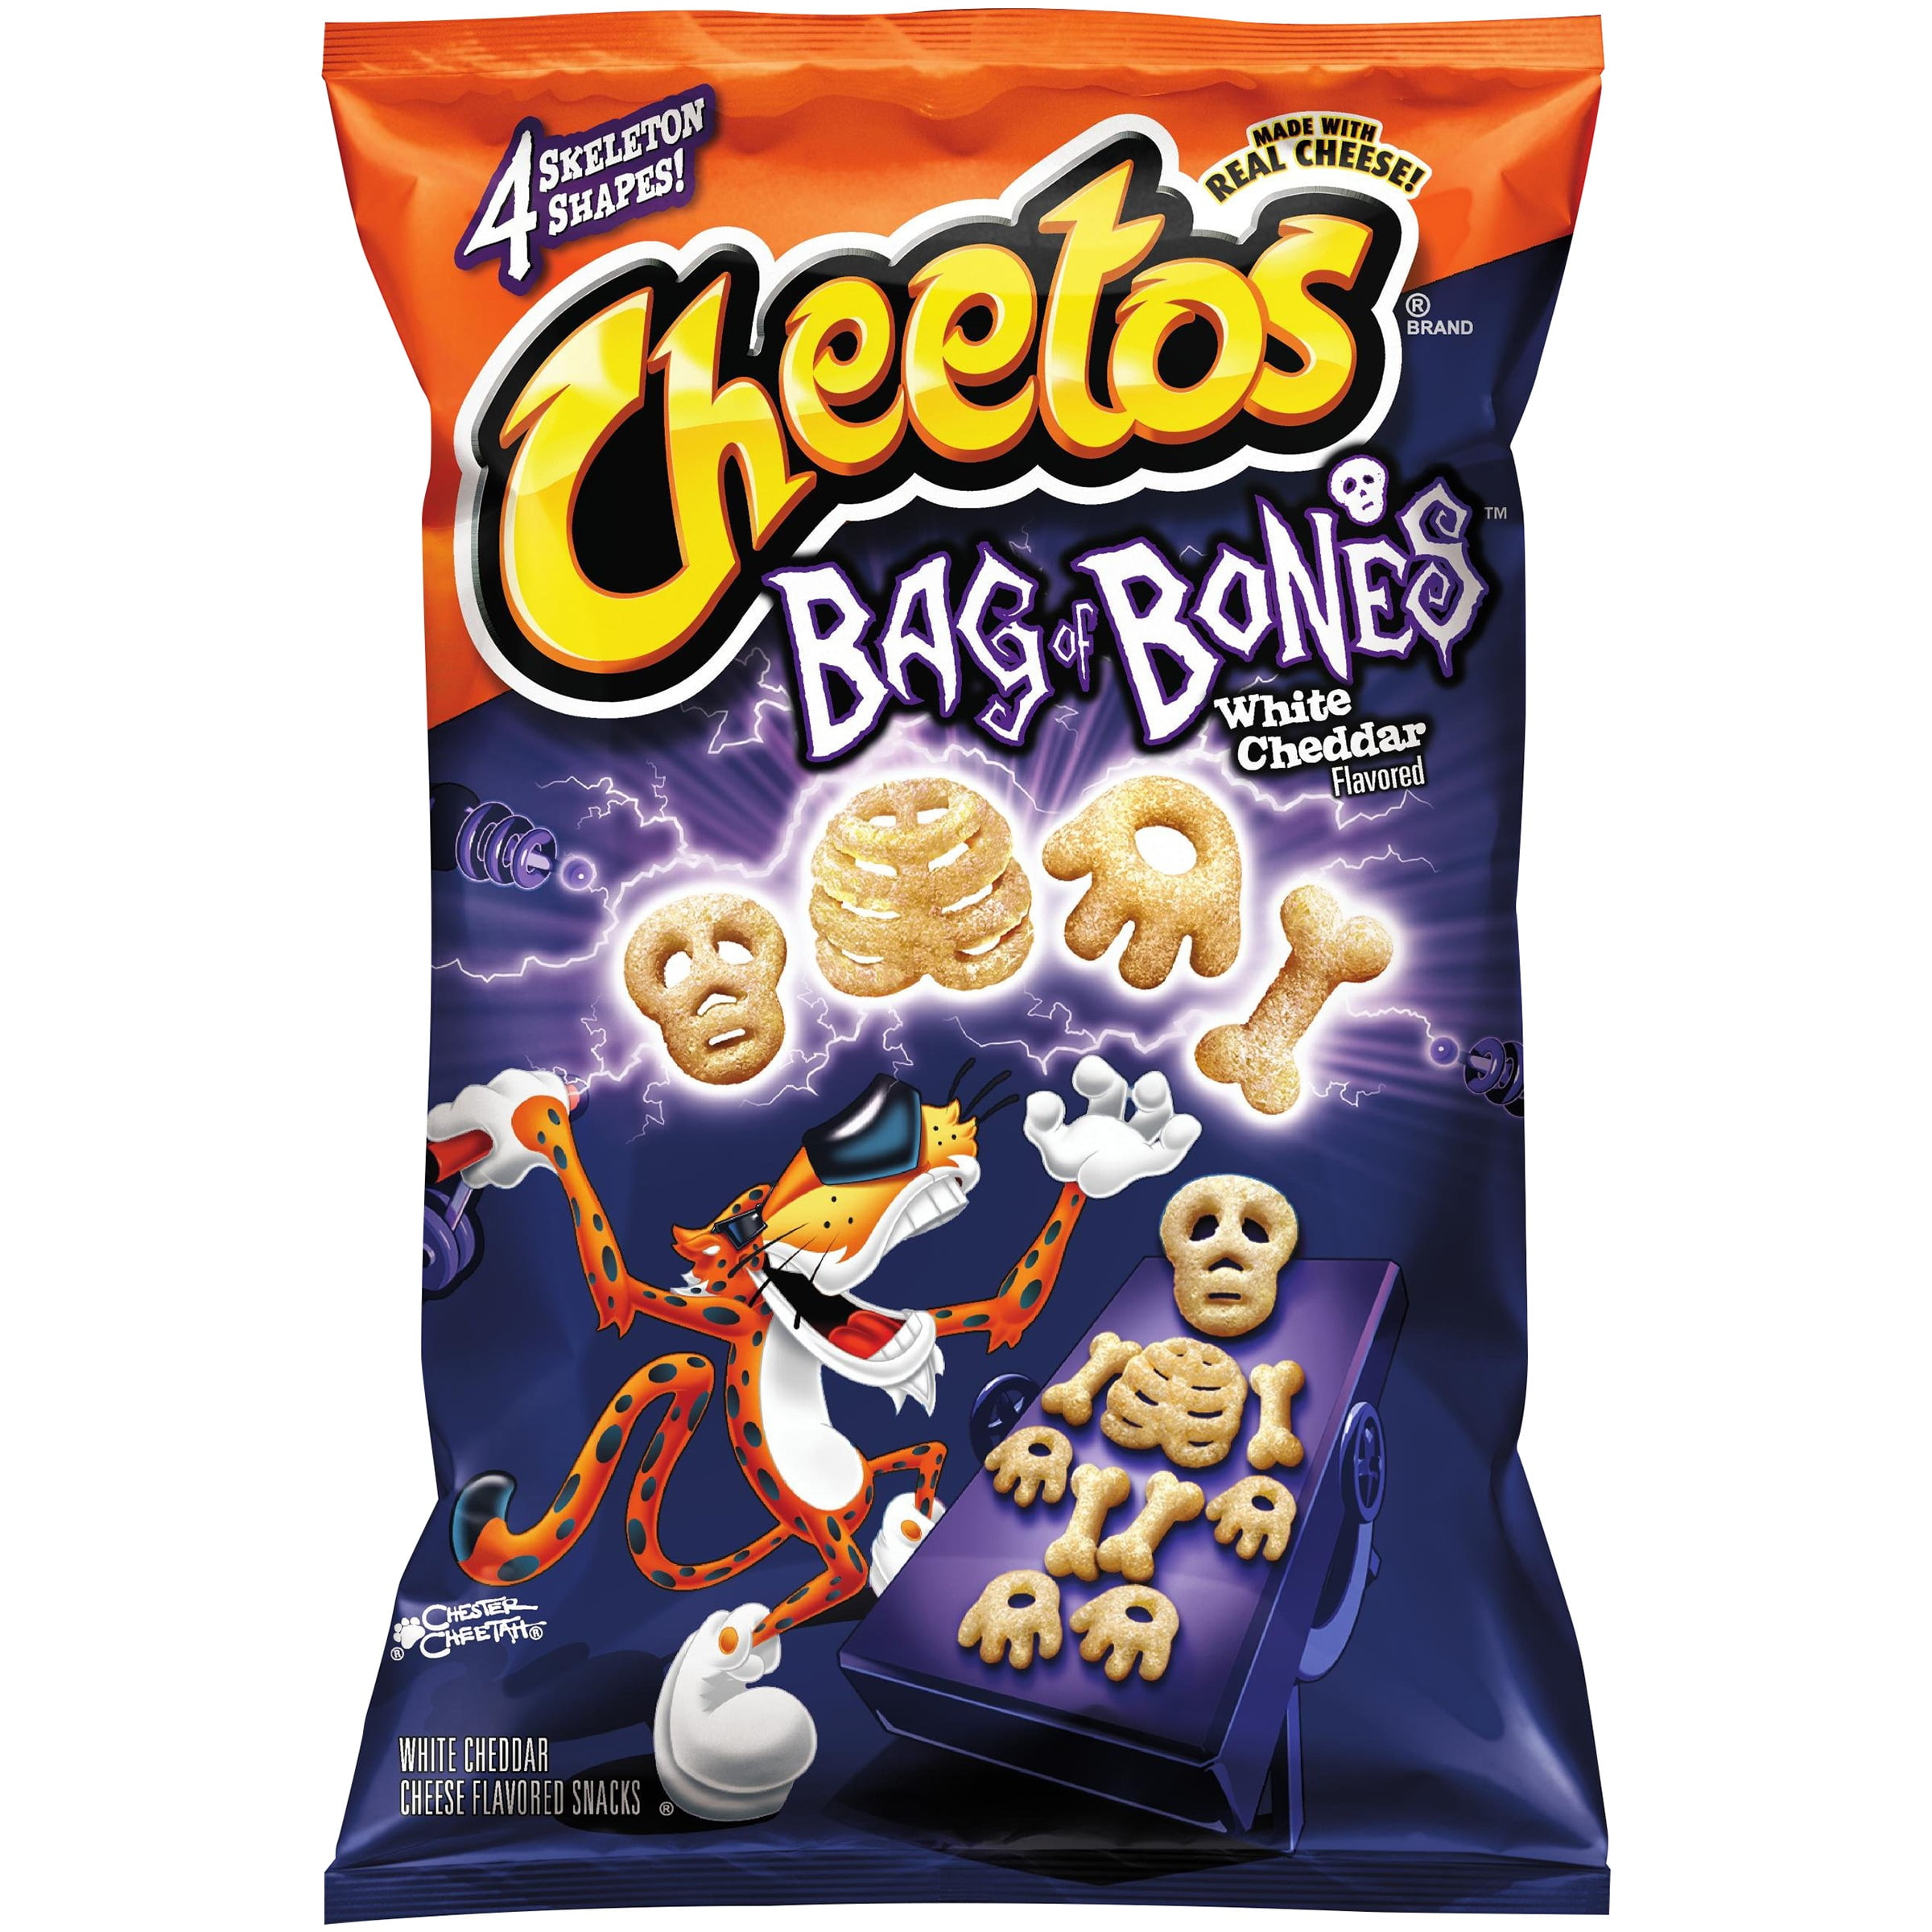 Bag of bones. Читос. Читос скелеты. Cheetos Хэллоуин. Cheetos скелеты.